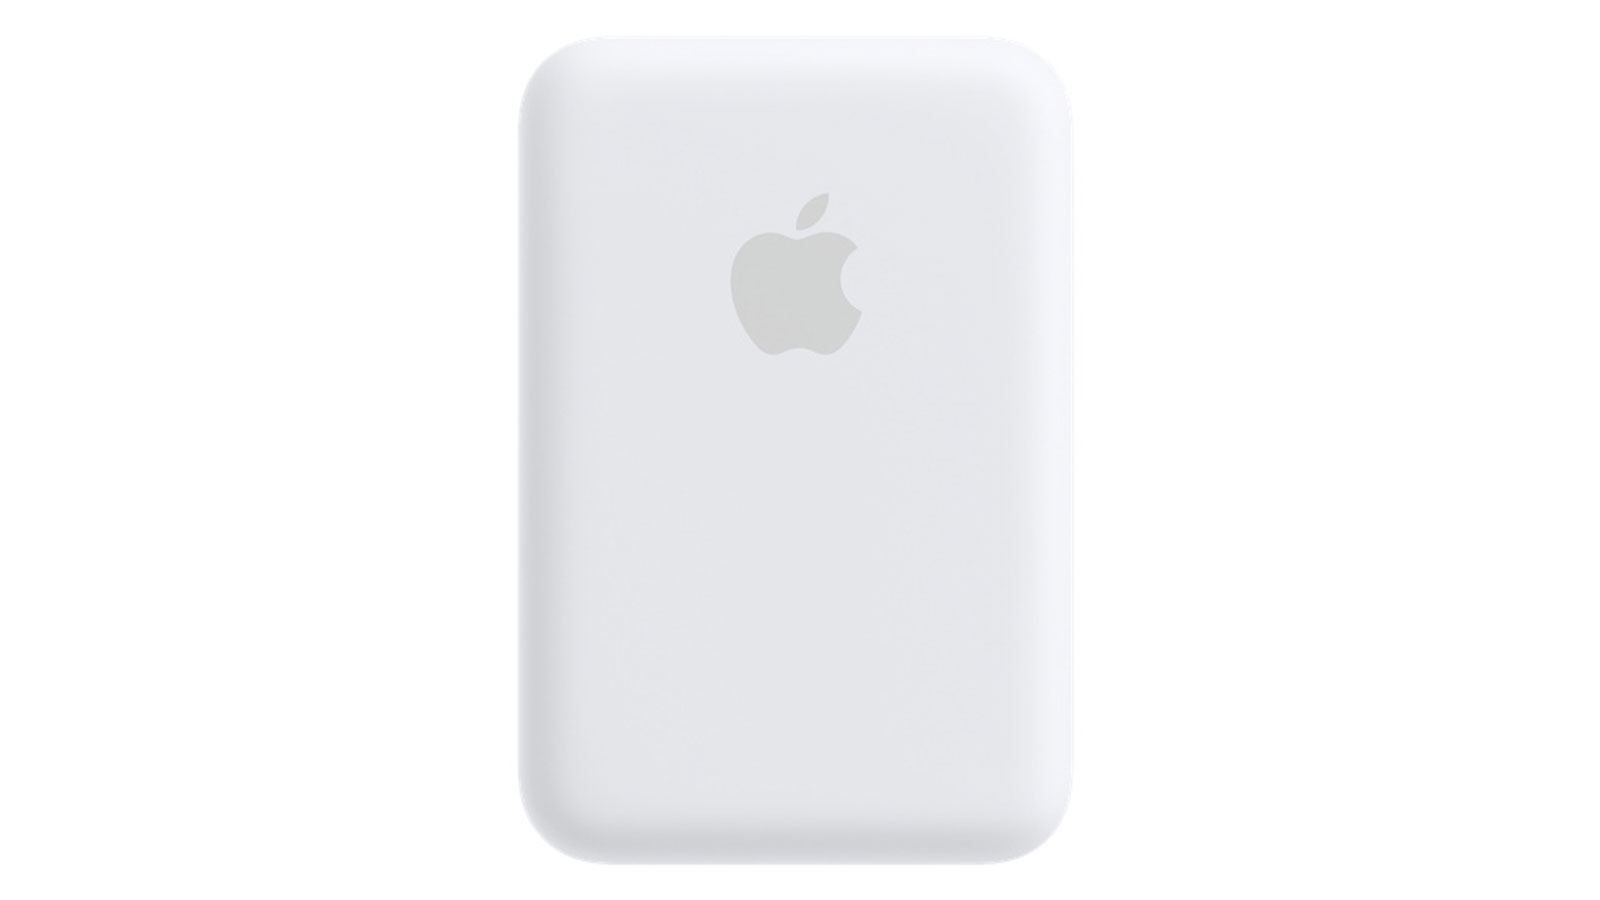 Les batteries MagSafe d'Apple peuvent être utilisées pour charger les AirPods